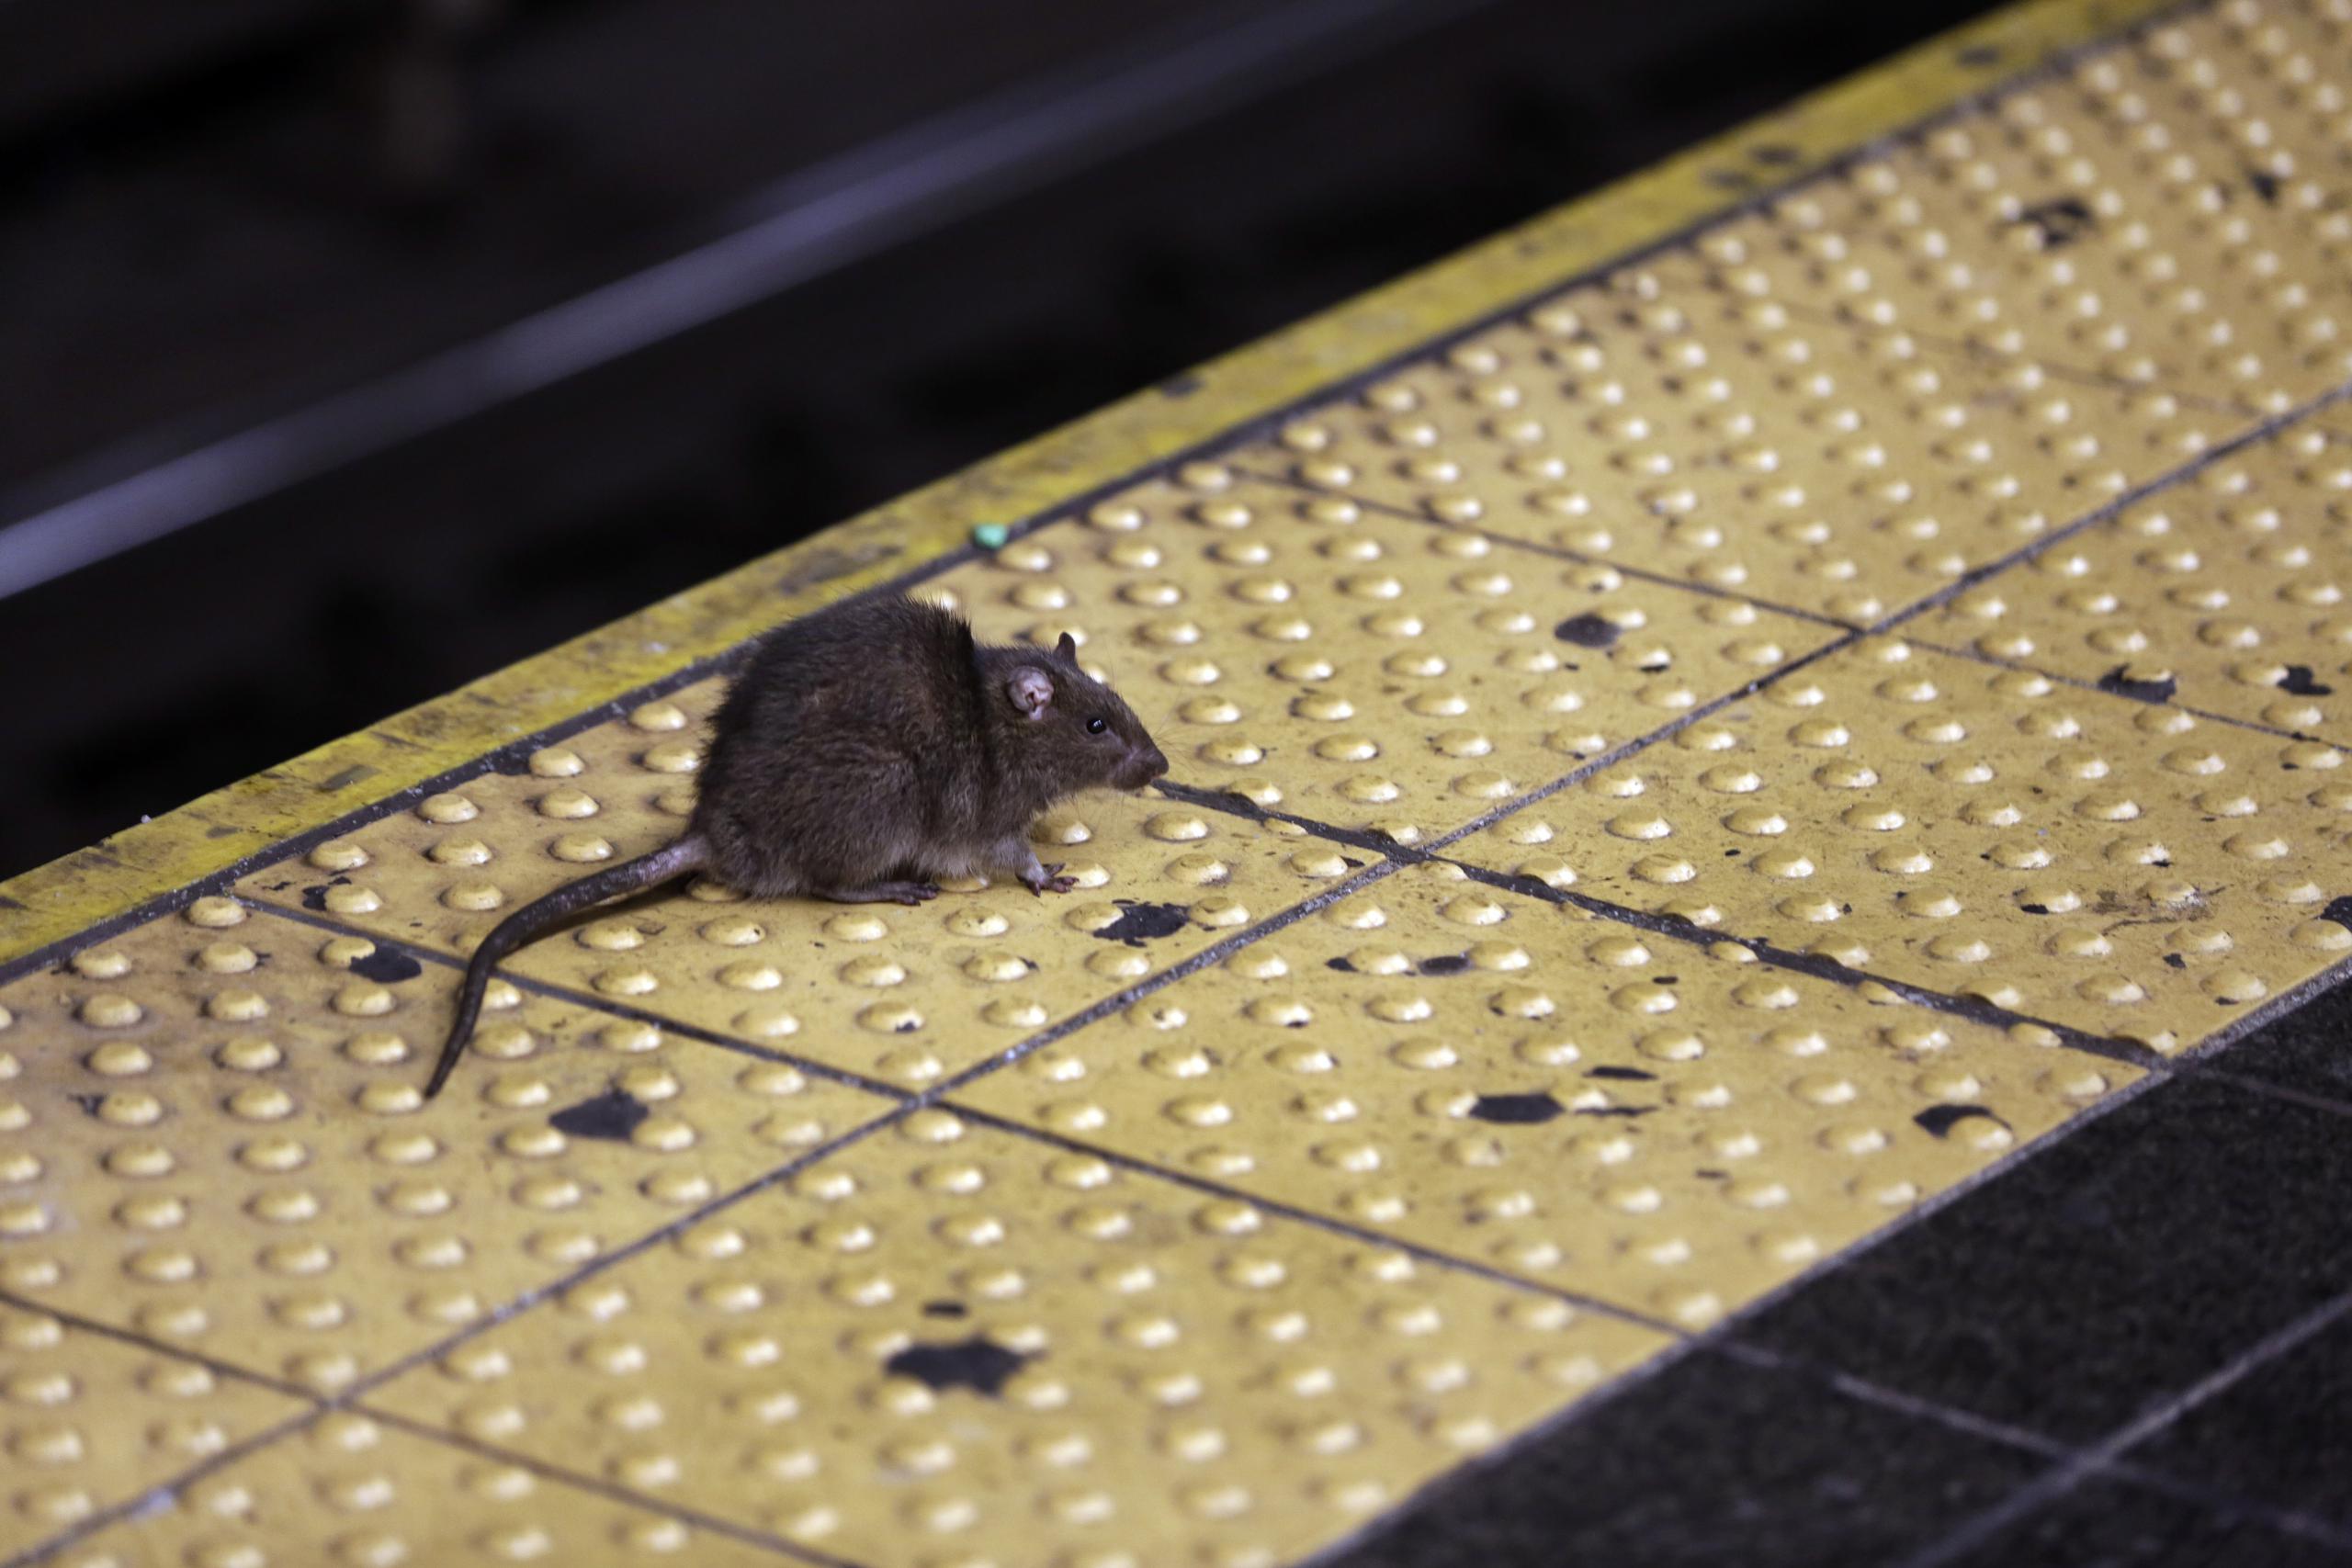 Los funcionarios de la ciudad de Nueva York han tratado de controlar la población de roedores durante generaciones, y han tenido resultados mixtos.